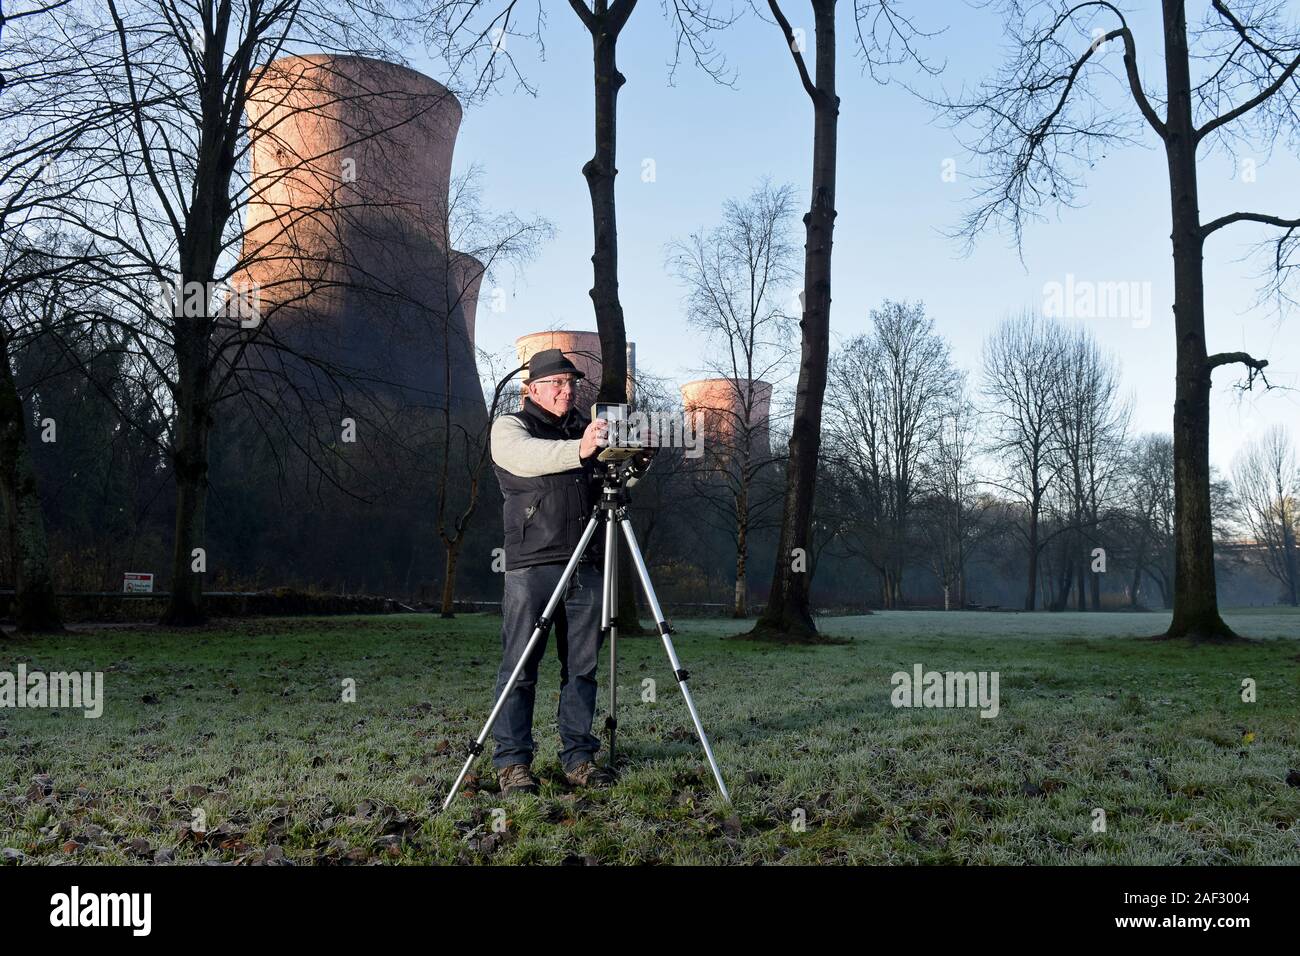 Landschaft Fotografen mit großformatigen Linhof Kamera auf einem Stativ. Bild von David Bagnall, Stockfoto